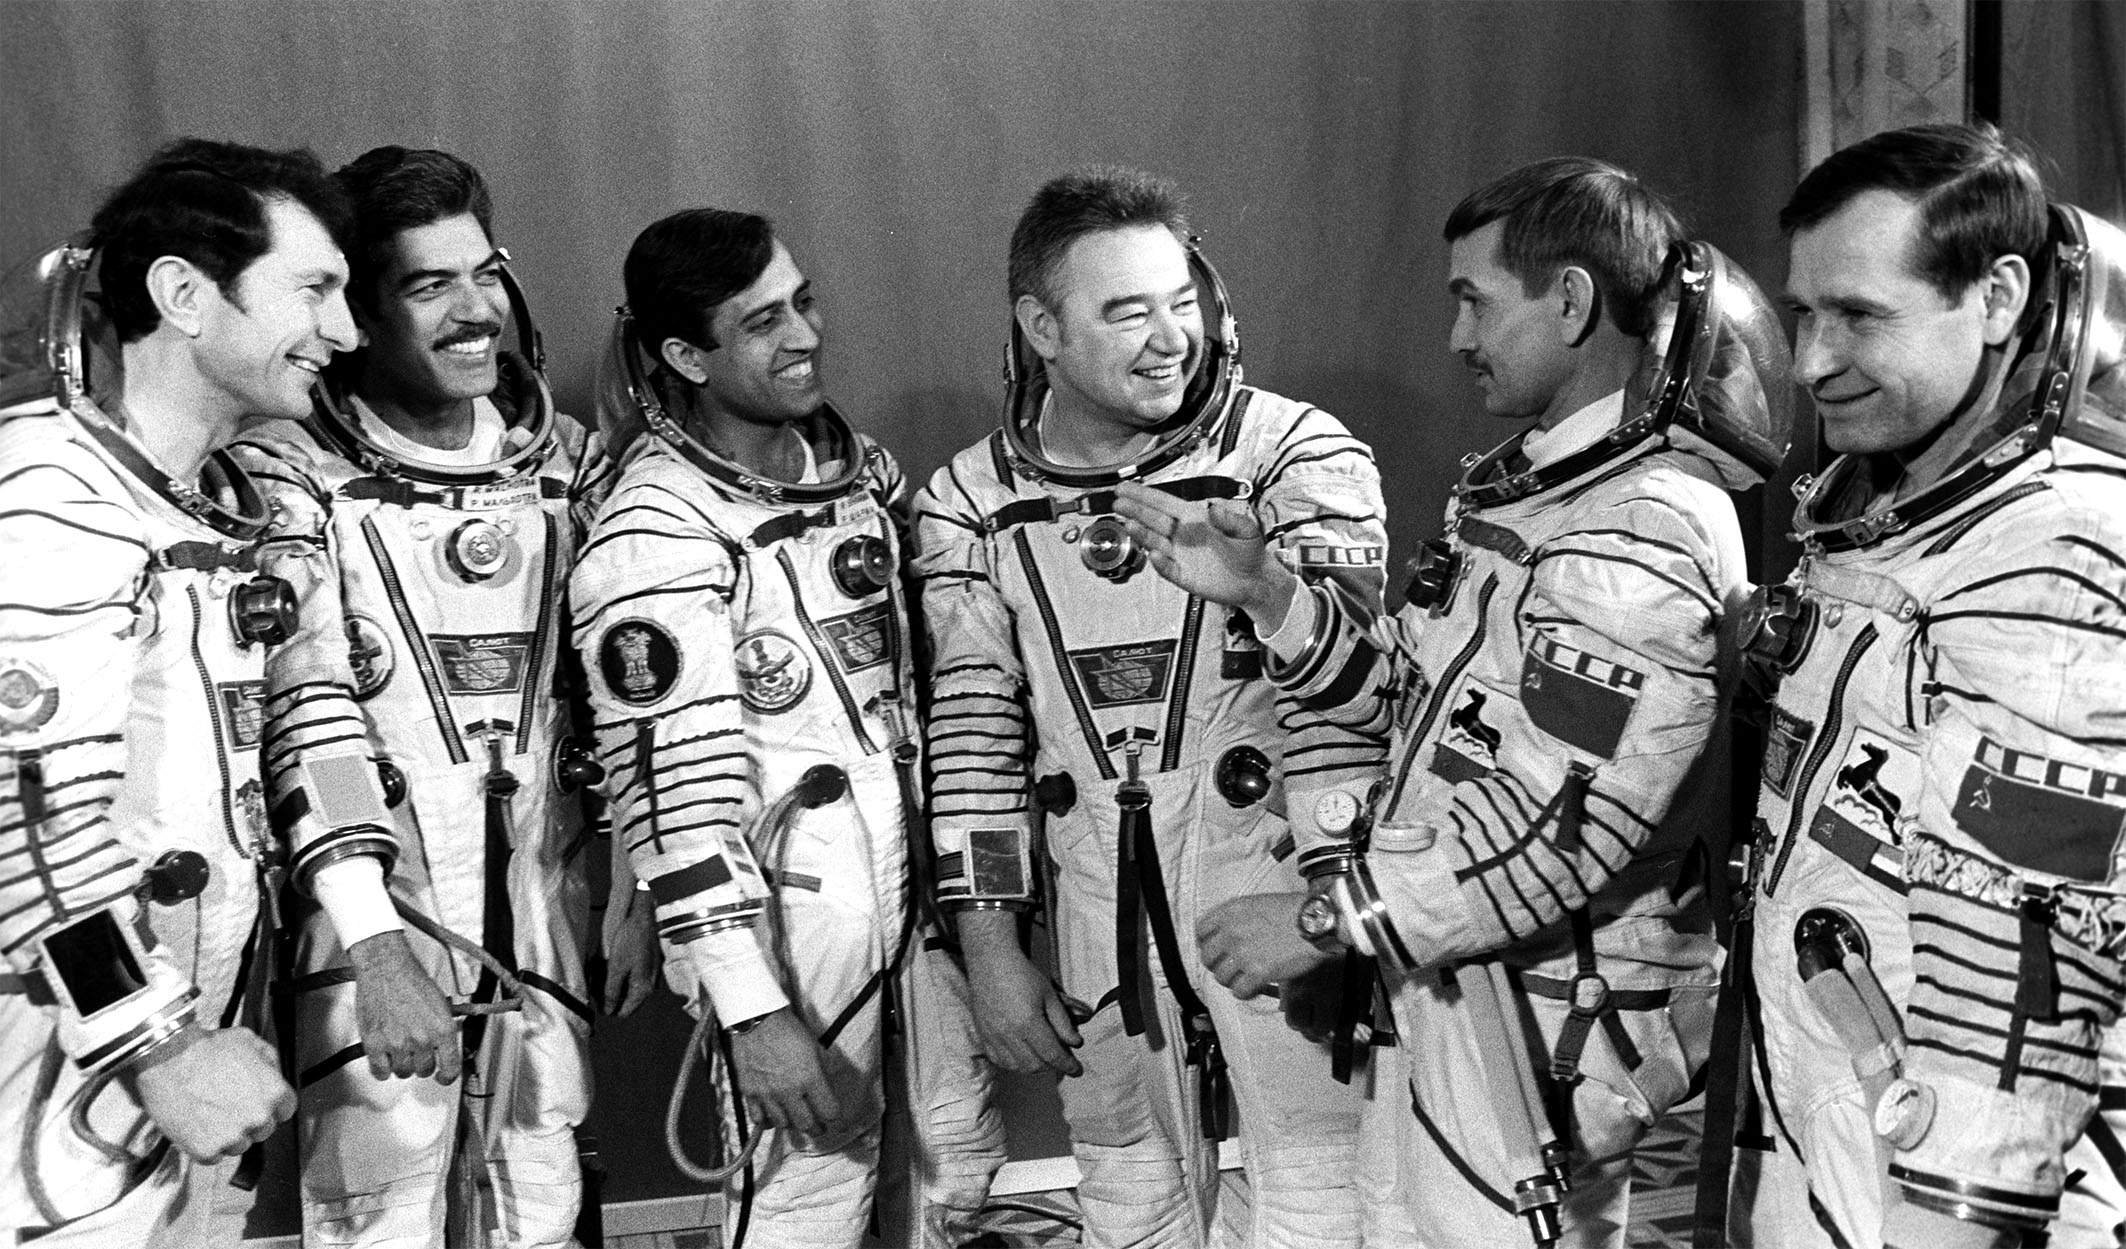 Первые космонавты стран